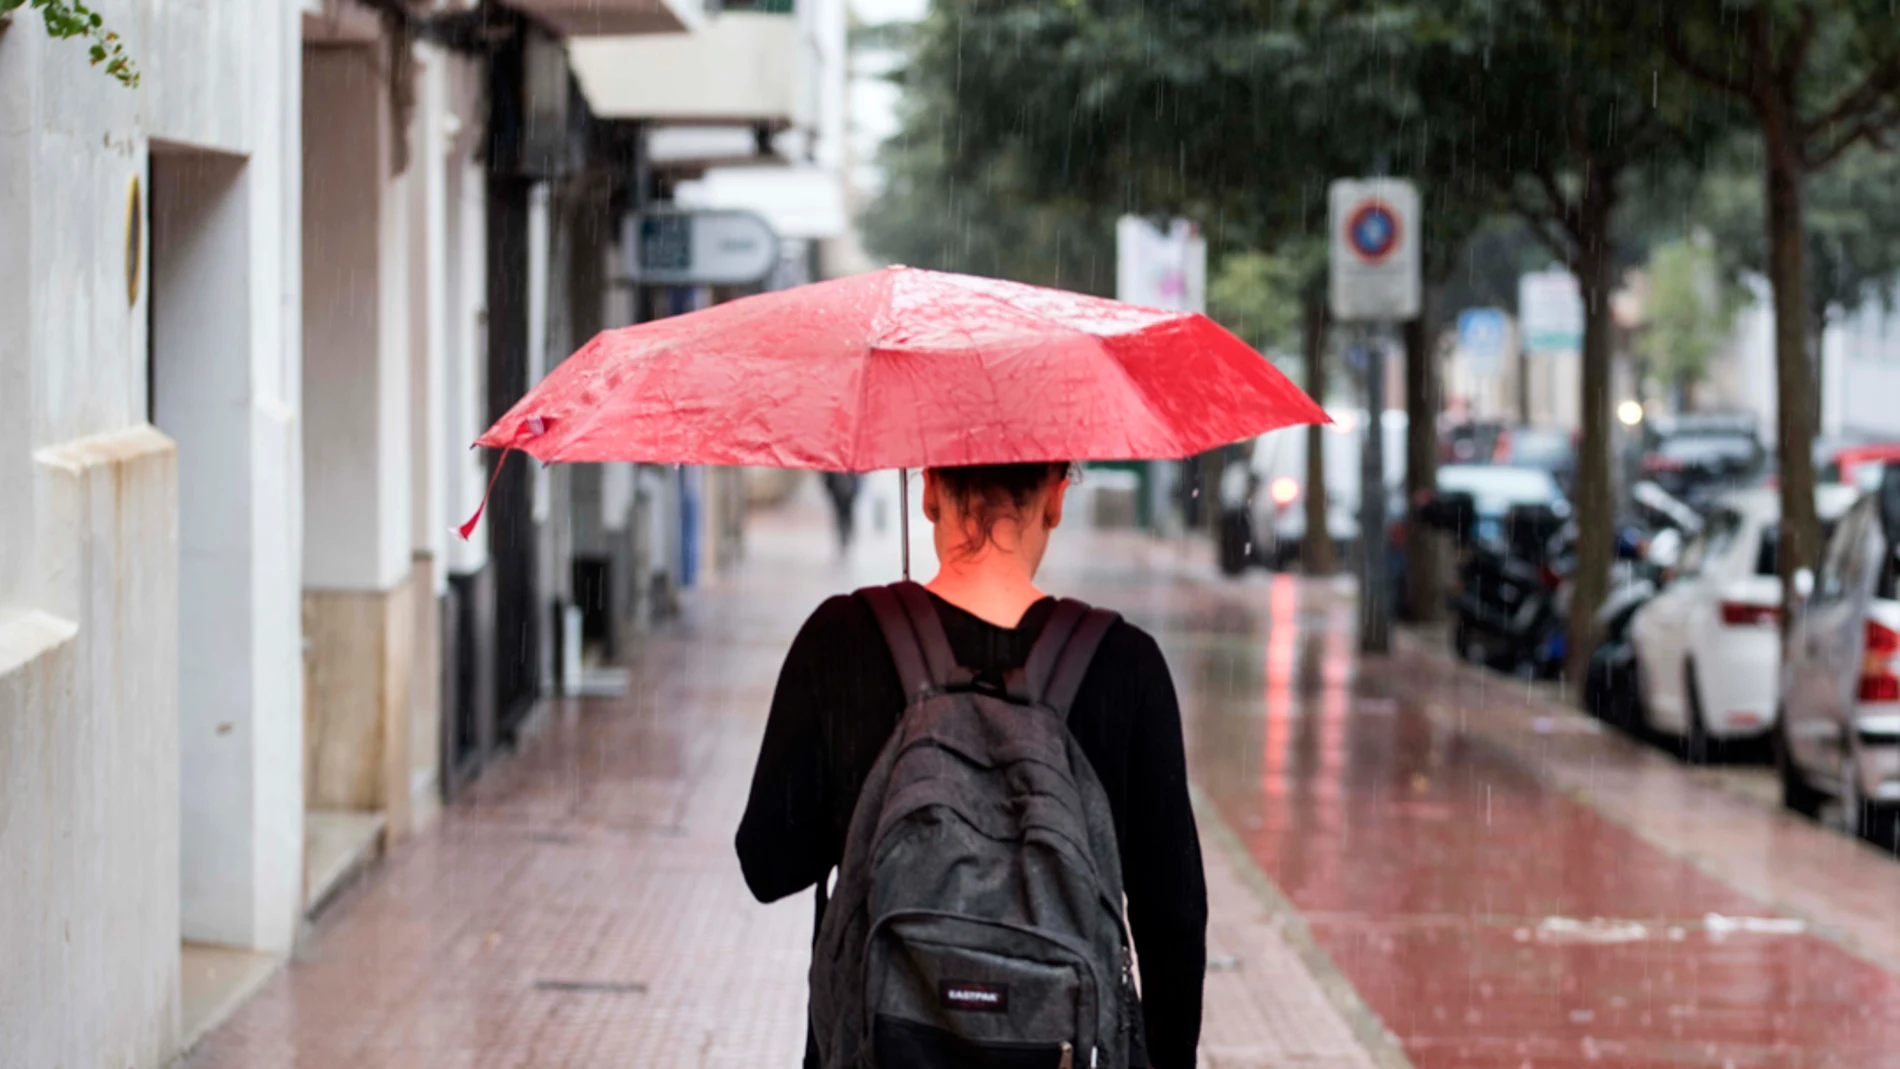 Una mujer pasea con su paraguas bajo la lluvia en una imagen de archivo